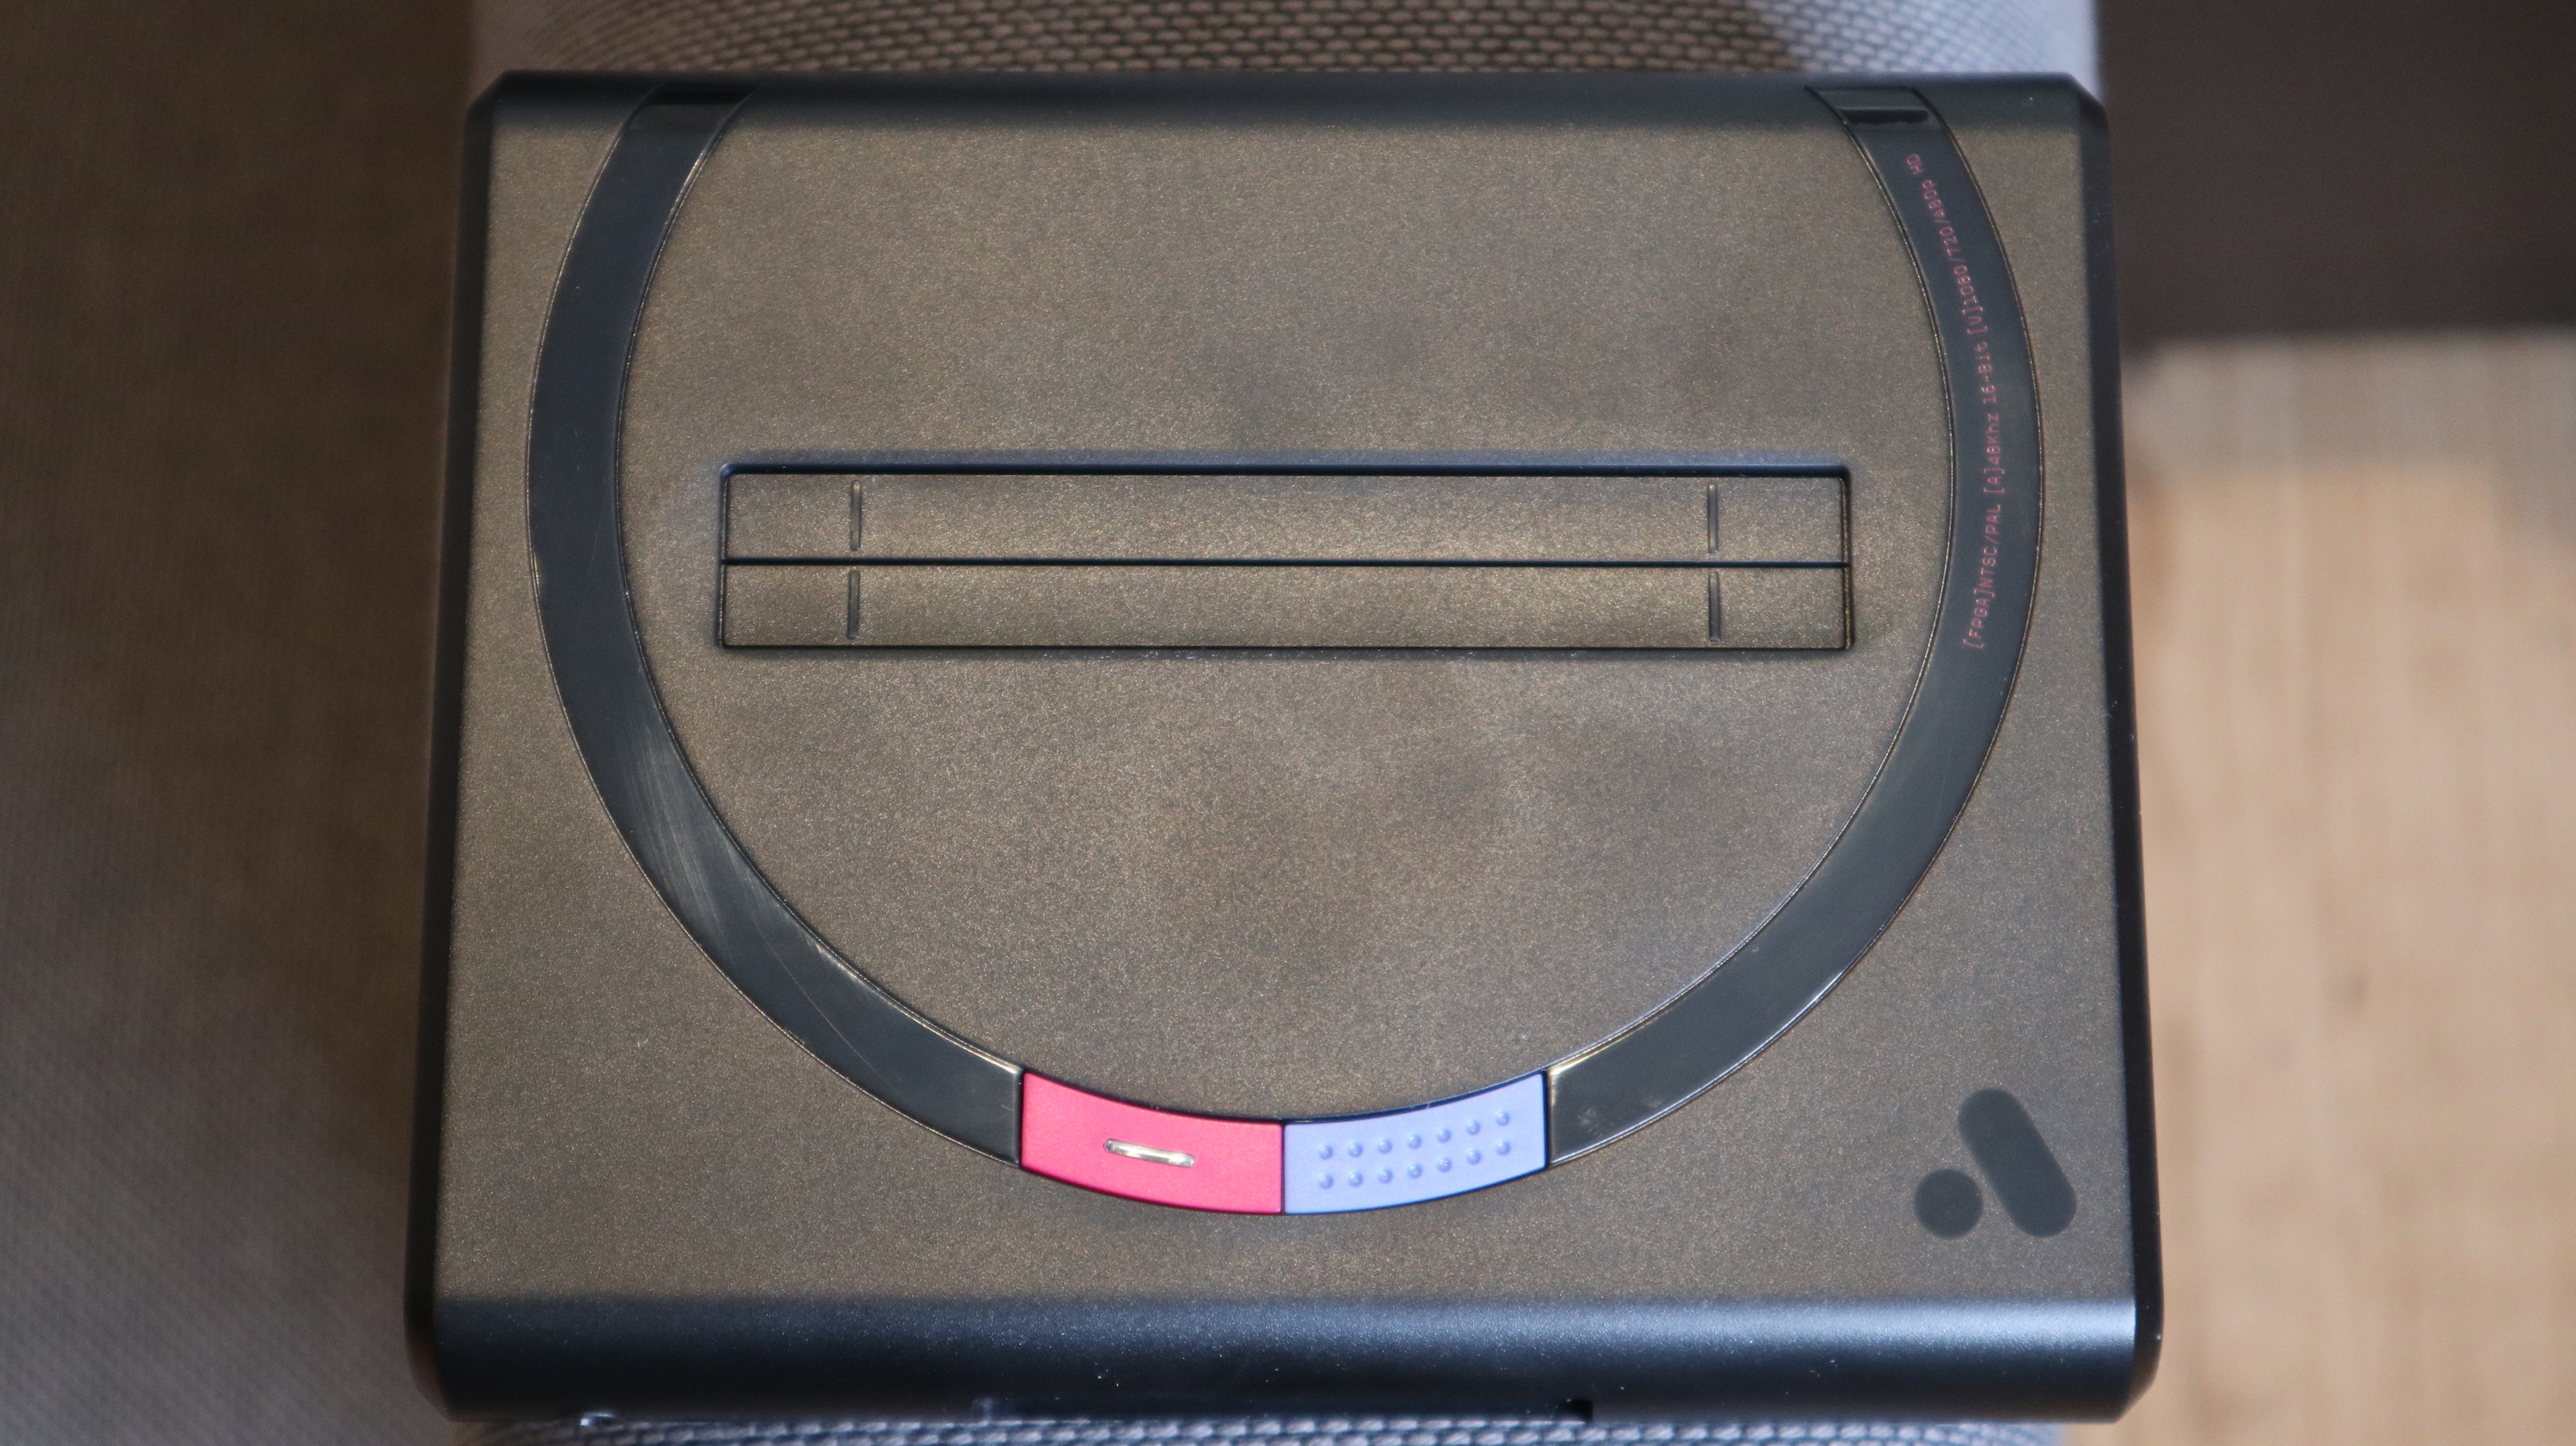 Displai Pro: Sega Mega Drive Mini Display (PAL/European)